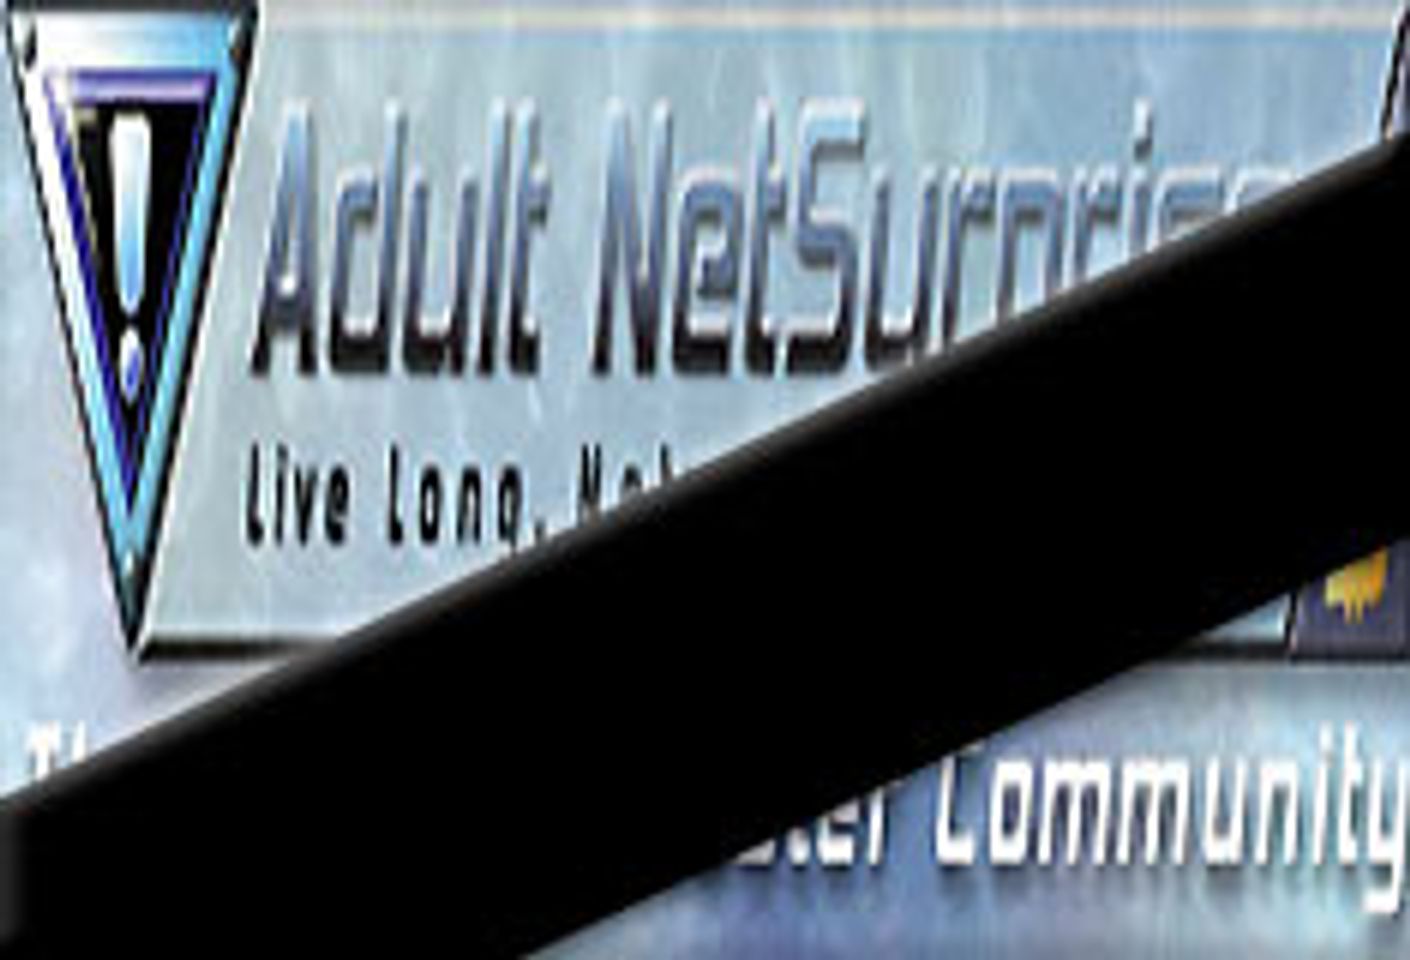 Adult Webmaster's Suicide Stuns Community